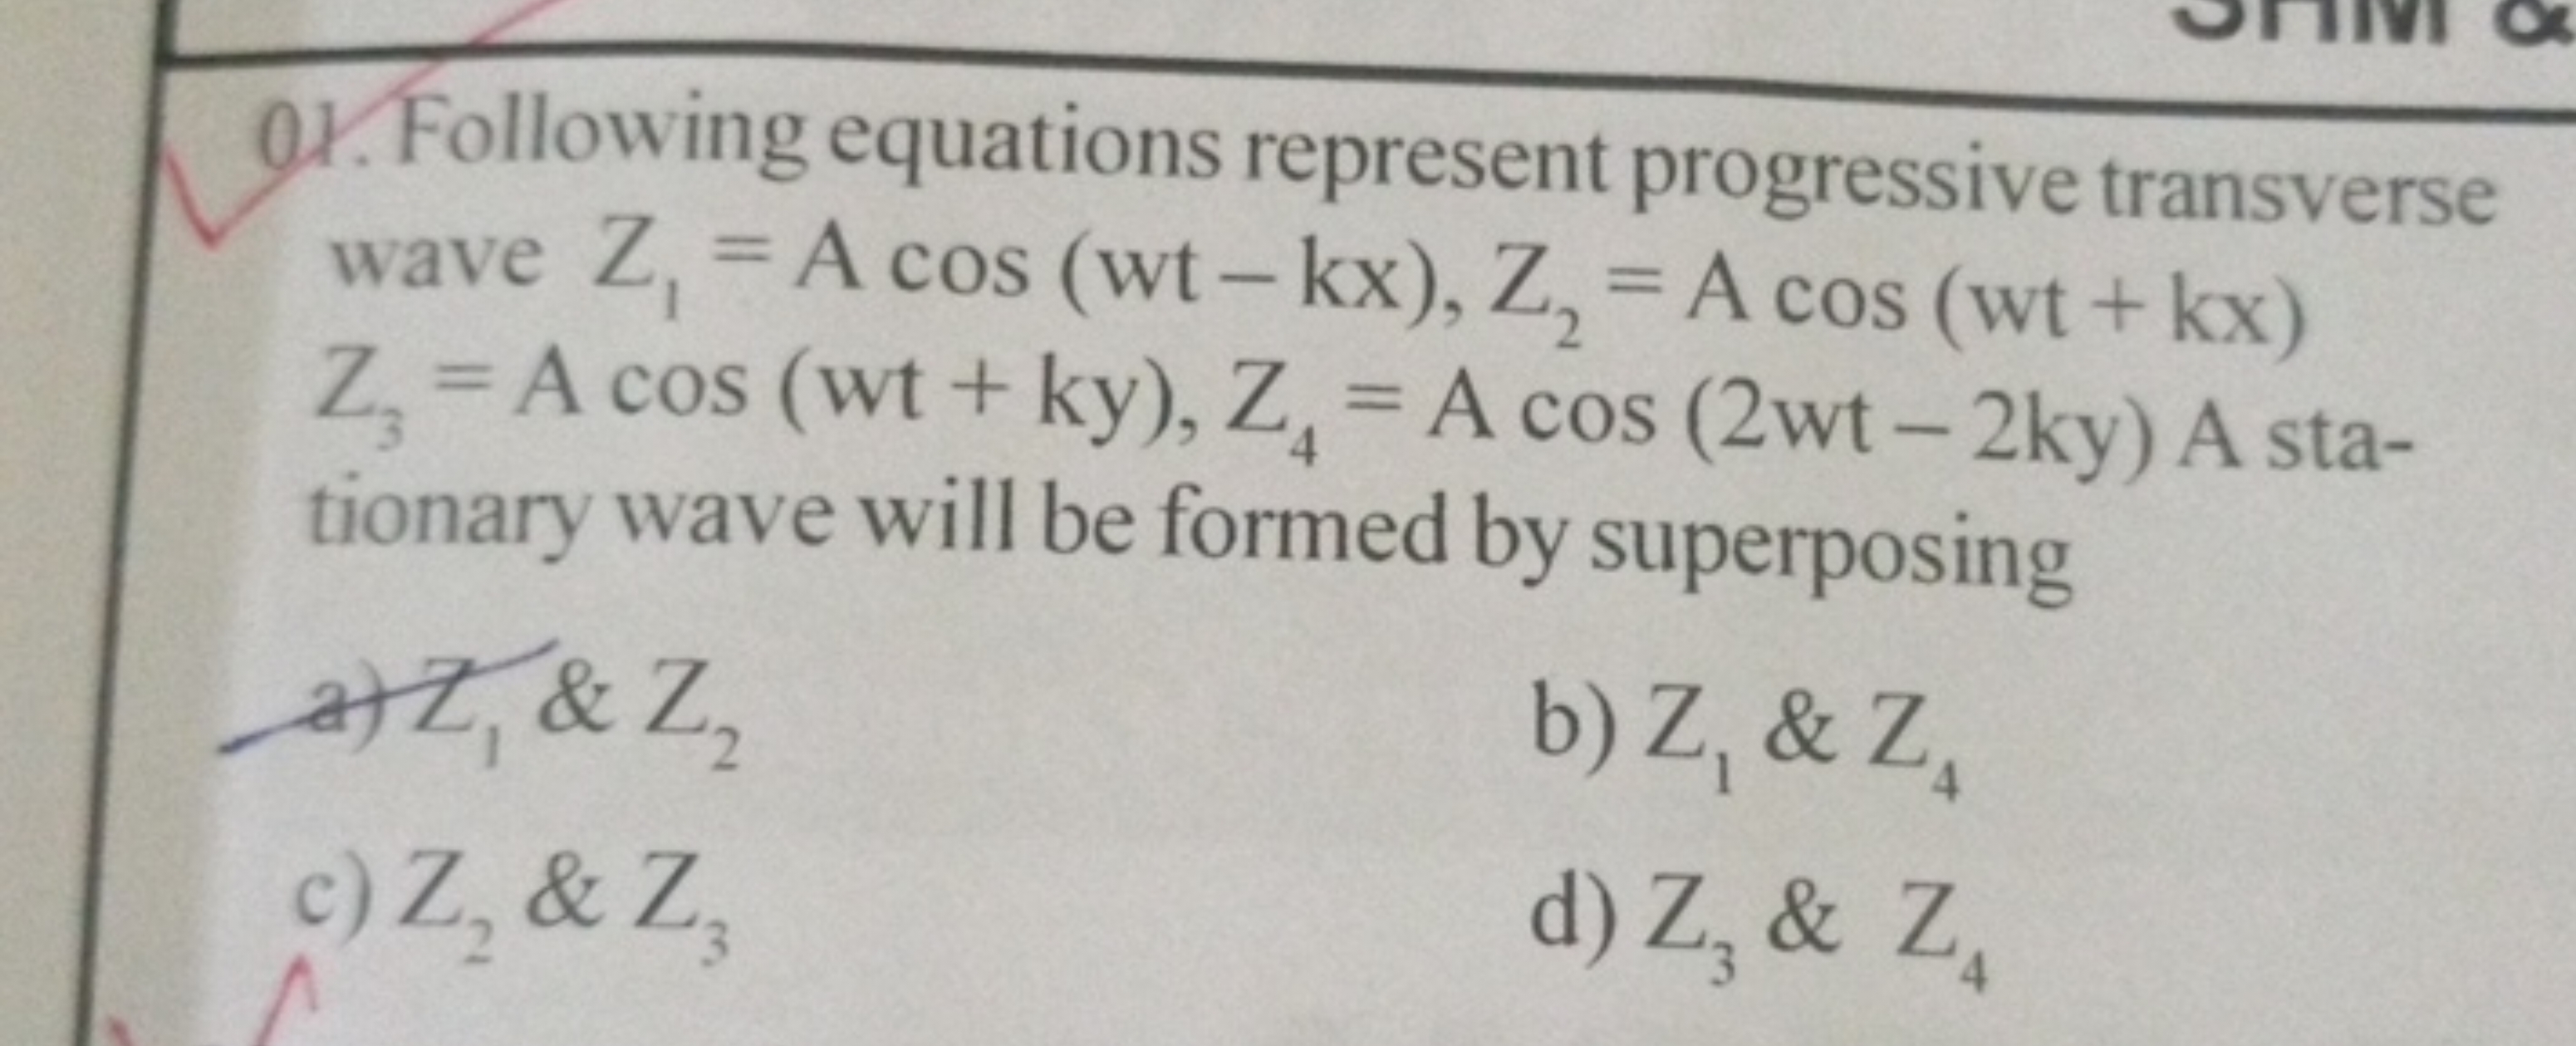 Q1. Following equations represent progressive transverse wave Z1​=Acos